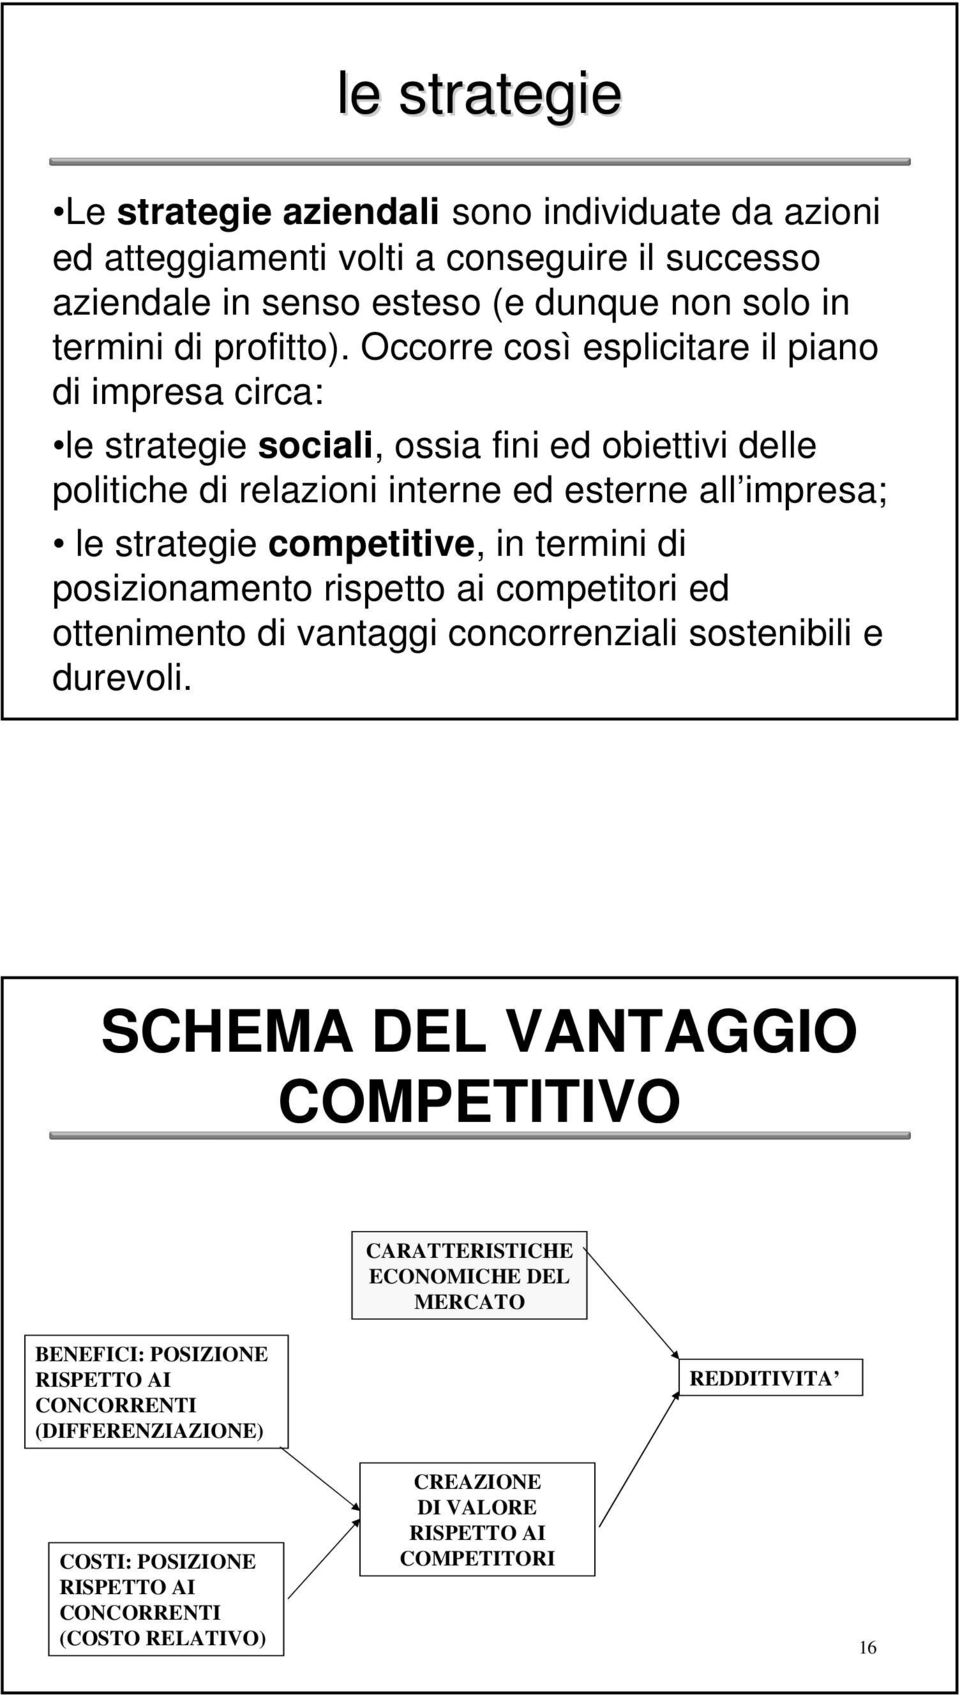 competitive, in termini di posizionamento rispetto ai competitori ed ottenimento di vantaggi concorrenziali sostenibili e durevoli.